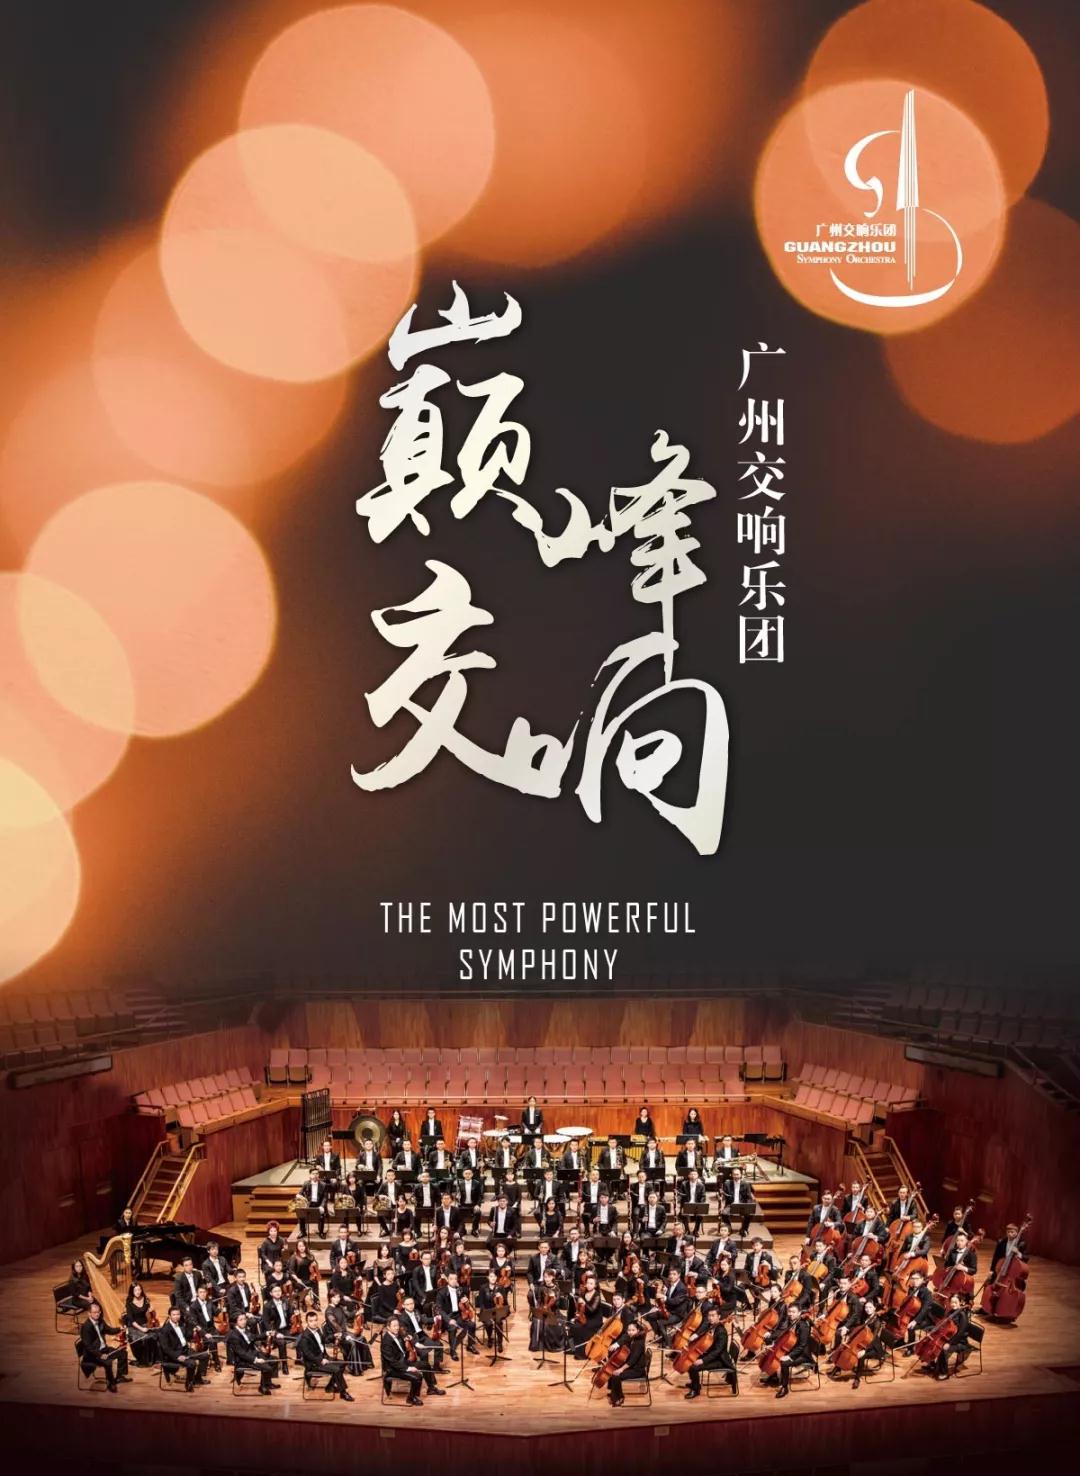 【免费抢票】聆听世界殿堂级优美华章，广州交响乐团倾力巨献“巅峰交响”